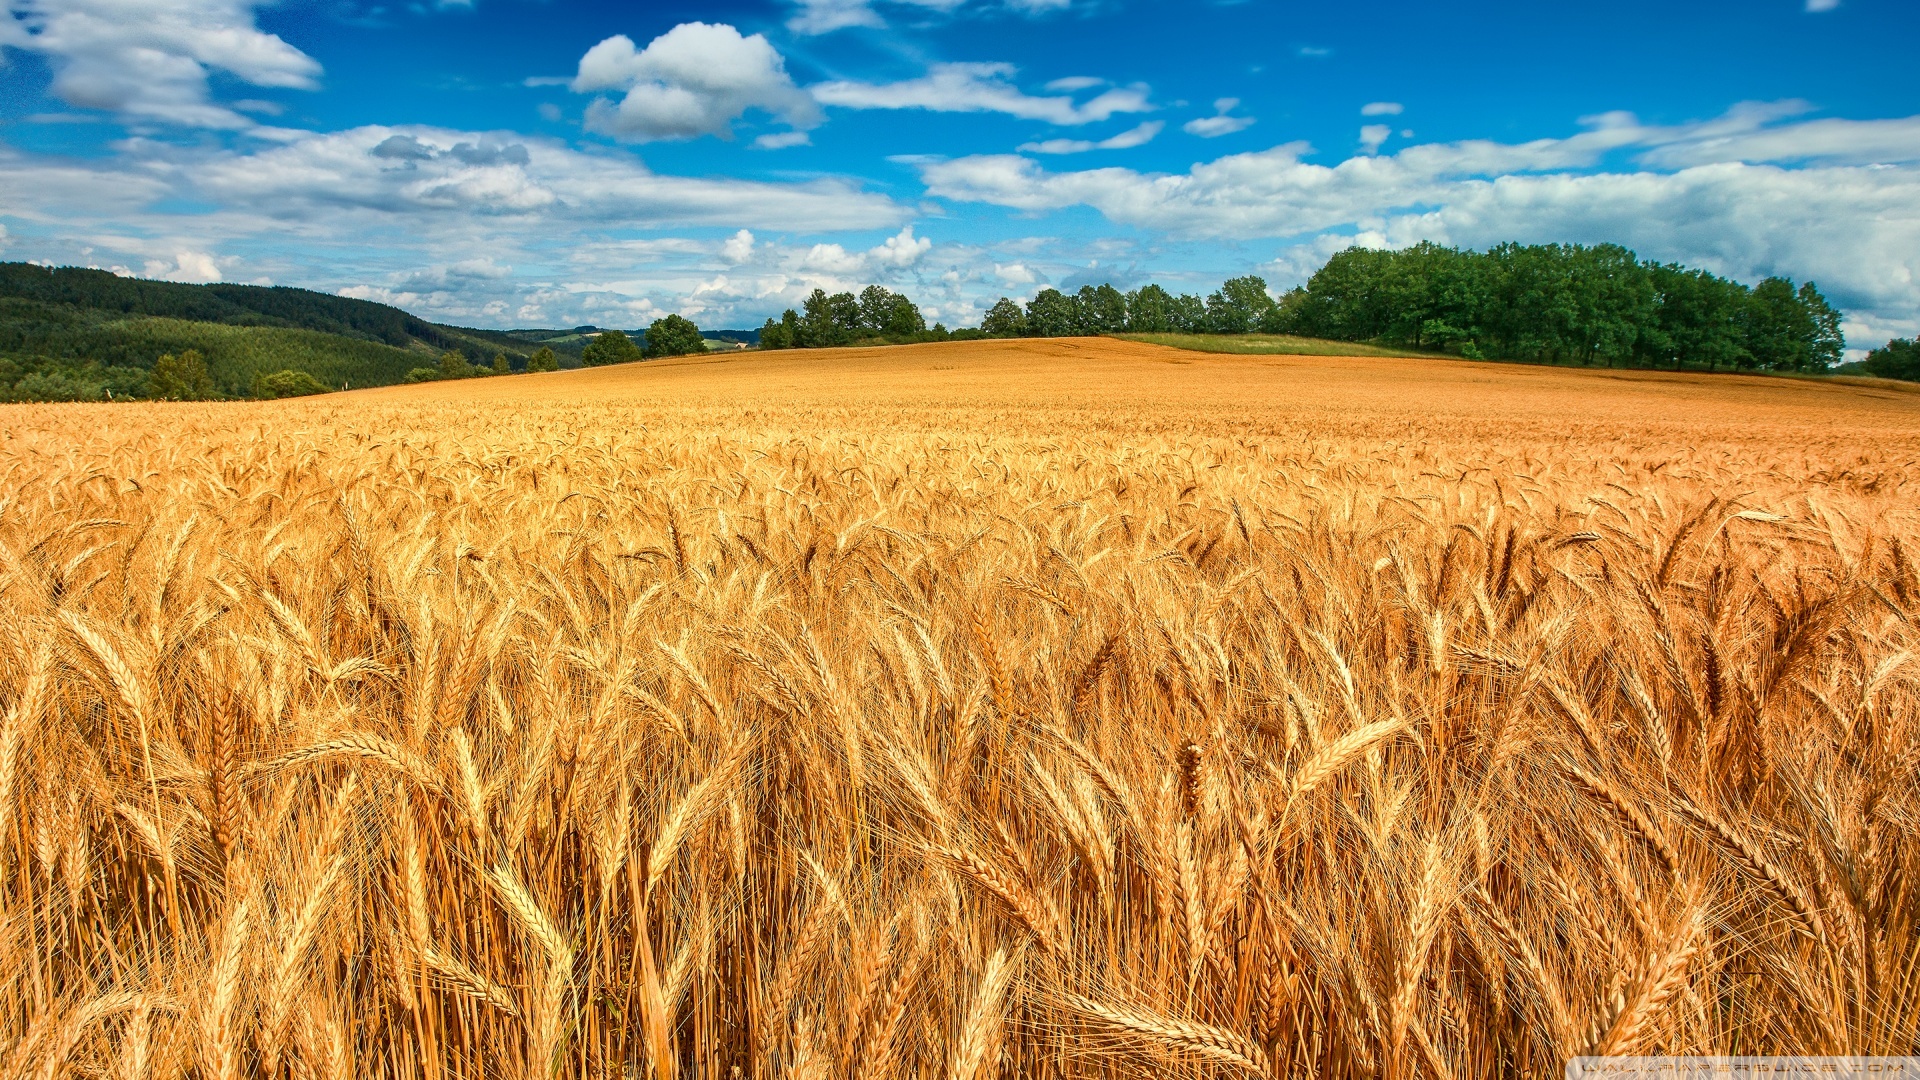 Golden Wheat Field ❤ 4K HD Desktop Wallpaper for 4K Ultra HD TV ...